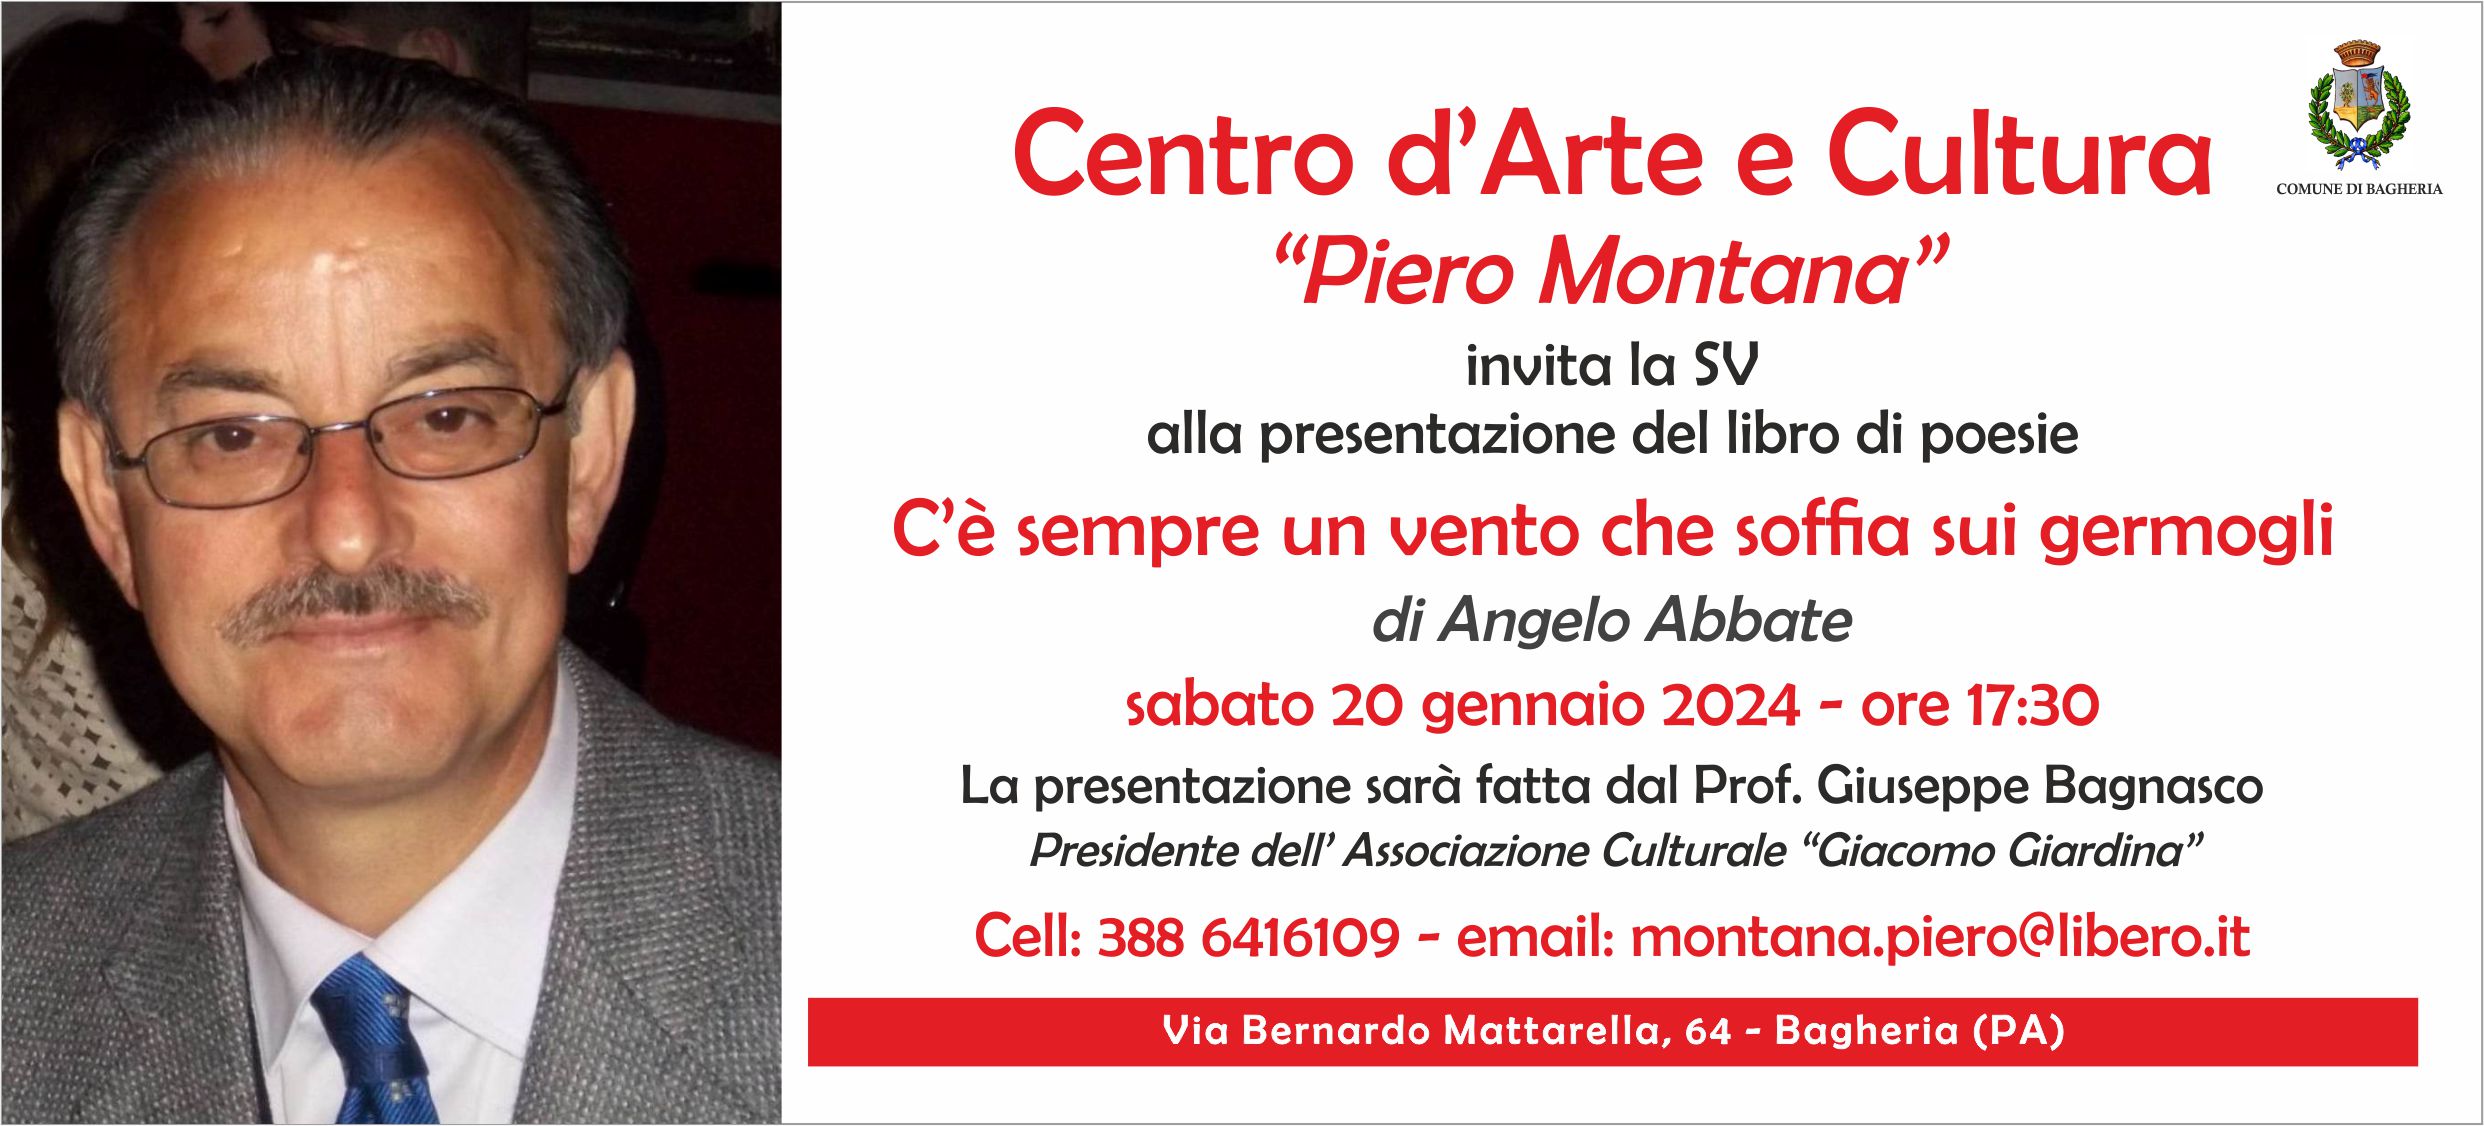 Presentazione del libro di poesie: “C’è sempre un vento che soffia sui germogli” di Angelo Abbate al Centro d’Arte e Cultura “Piero Montana”.